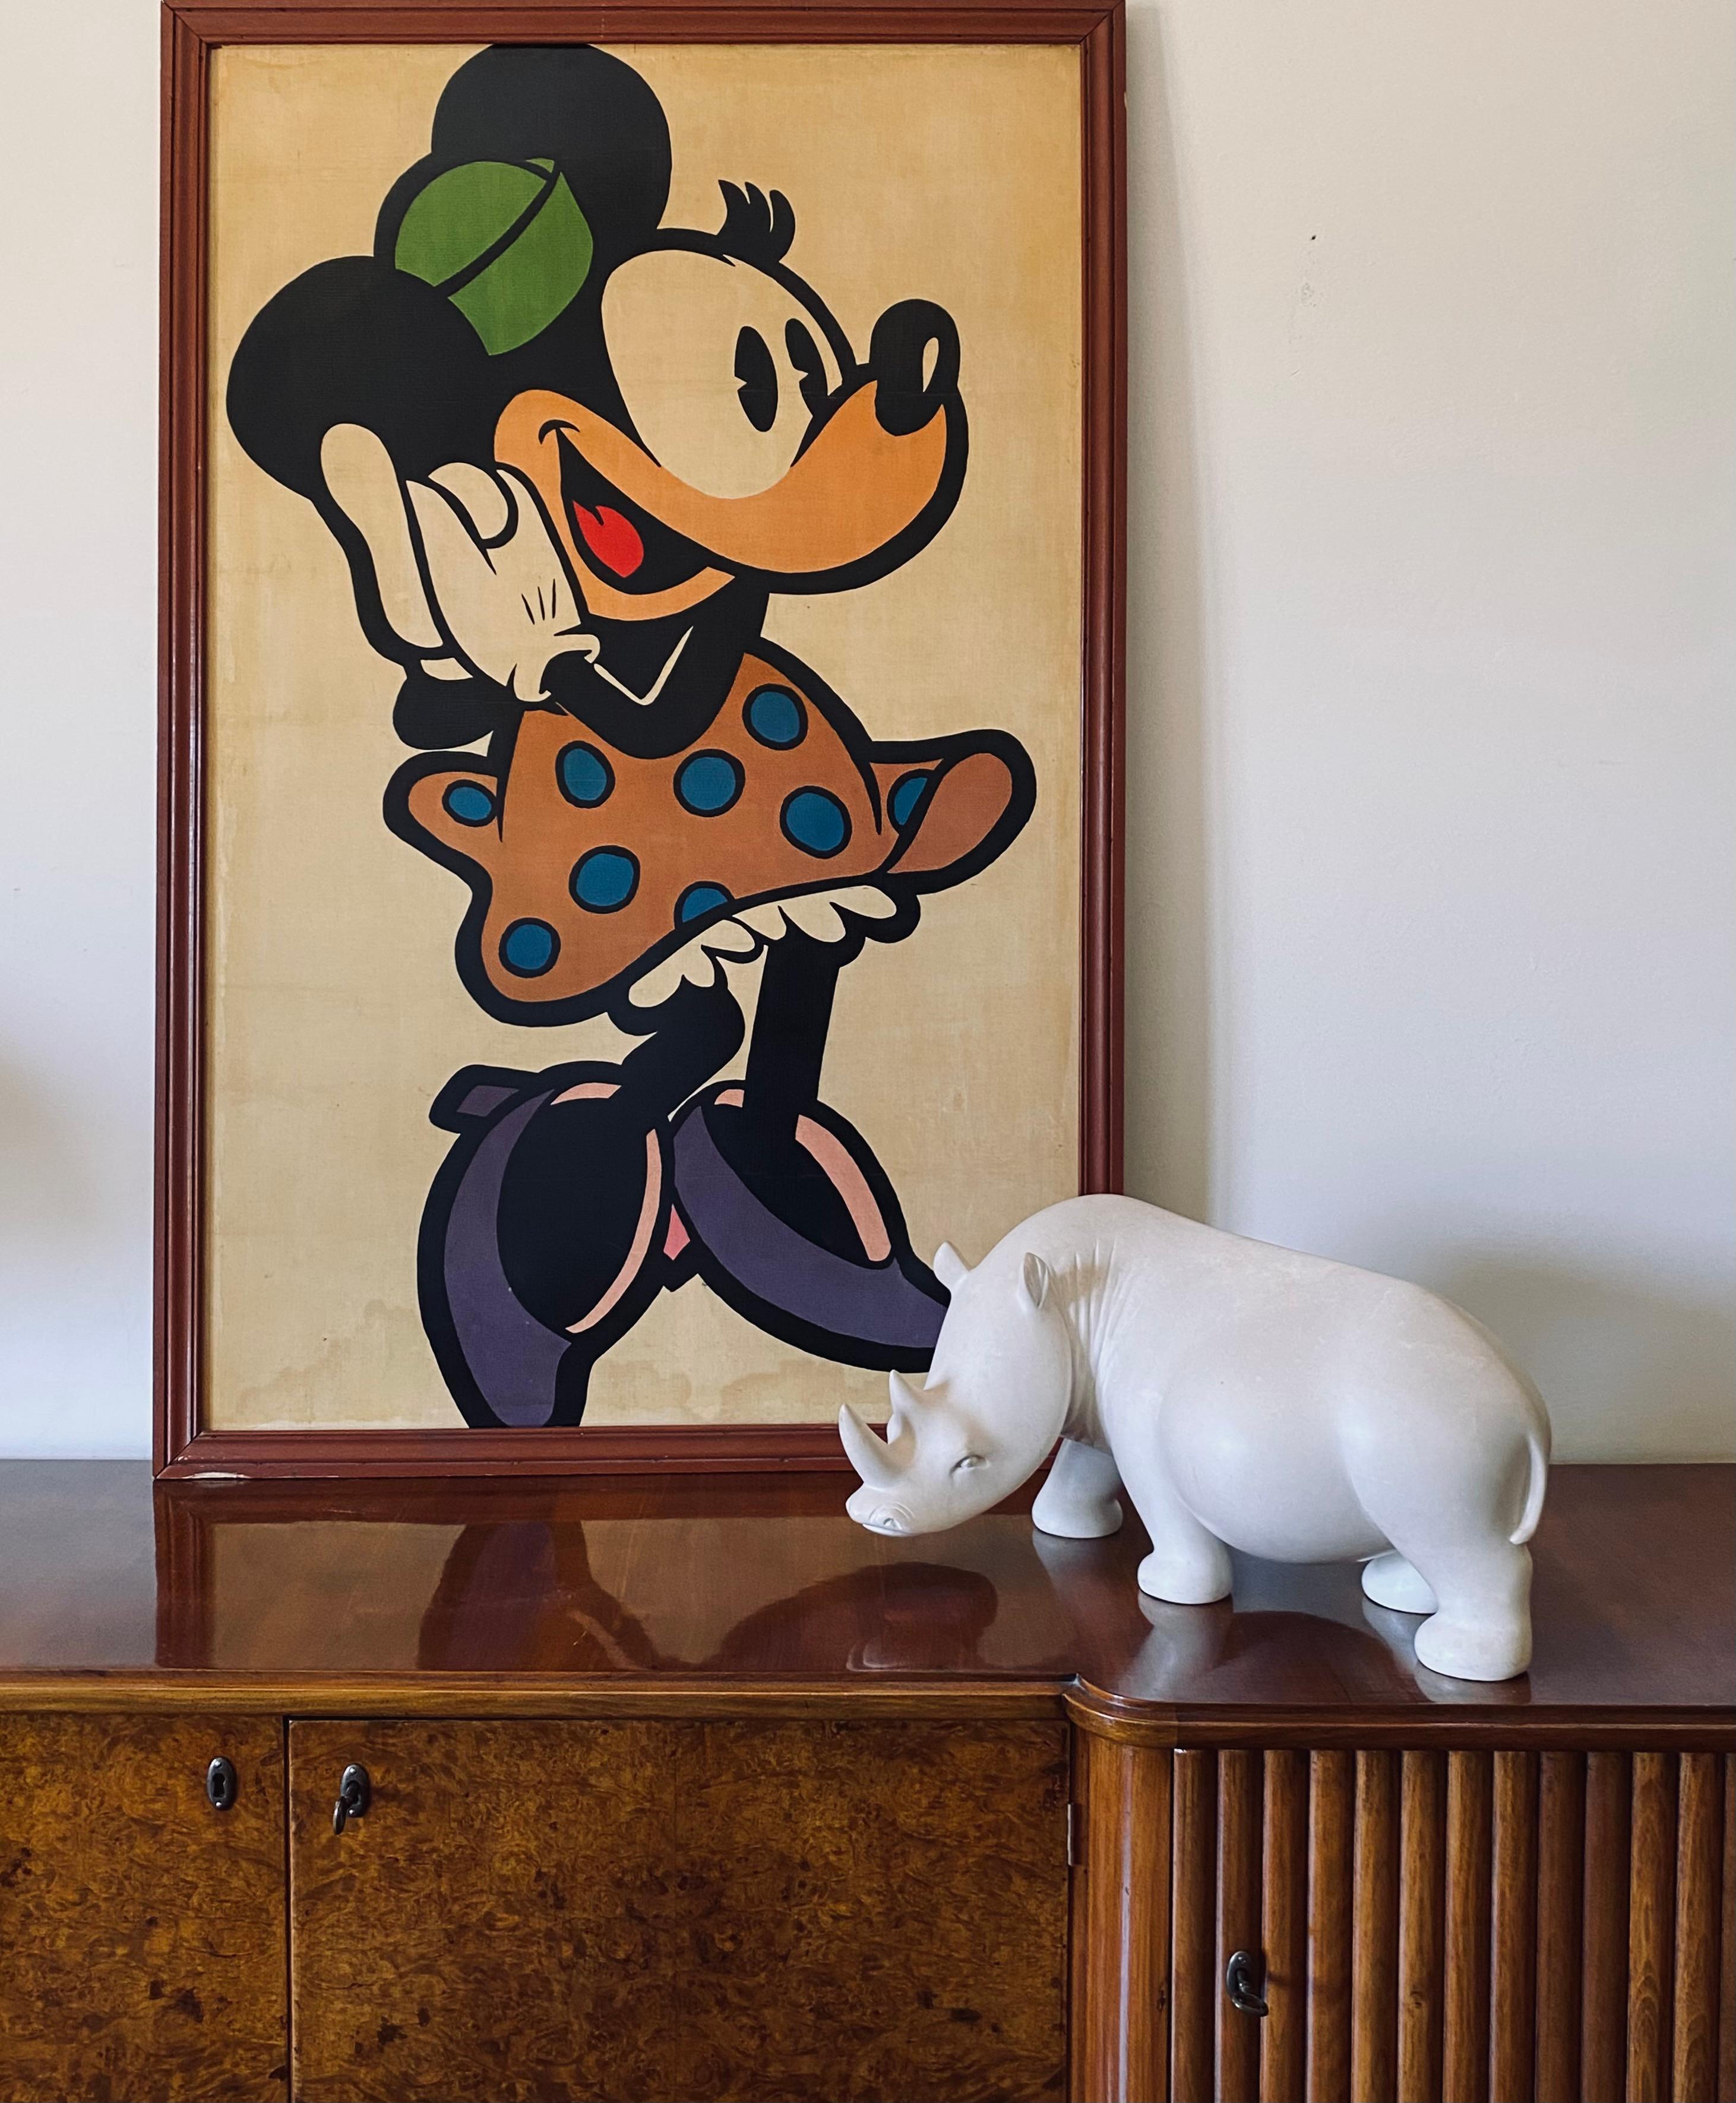 Minnie Mouse gerahmtes Poster

Frankreich 1960er Jahre

121 x 80 cm

gerahmt

Zustand: gut, alters- und gebrauchsgemäß. Kleine Mängel am Holzrahmen